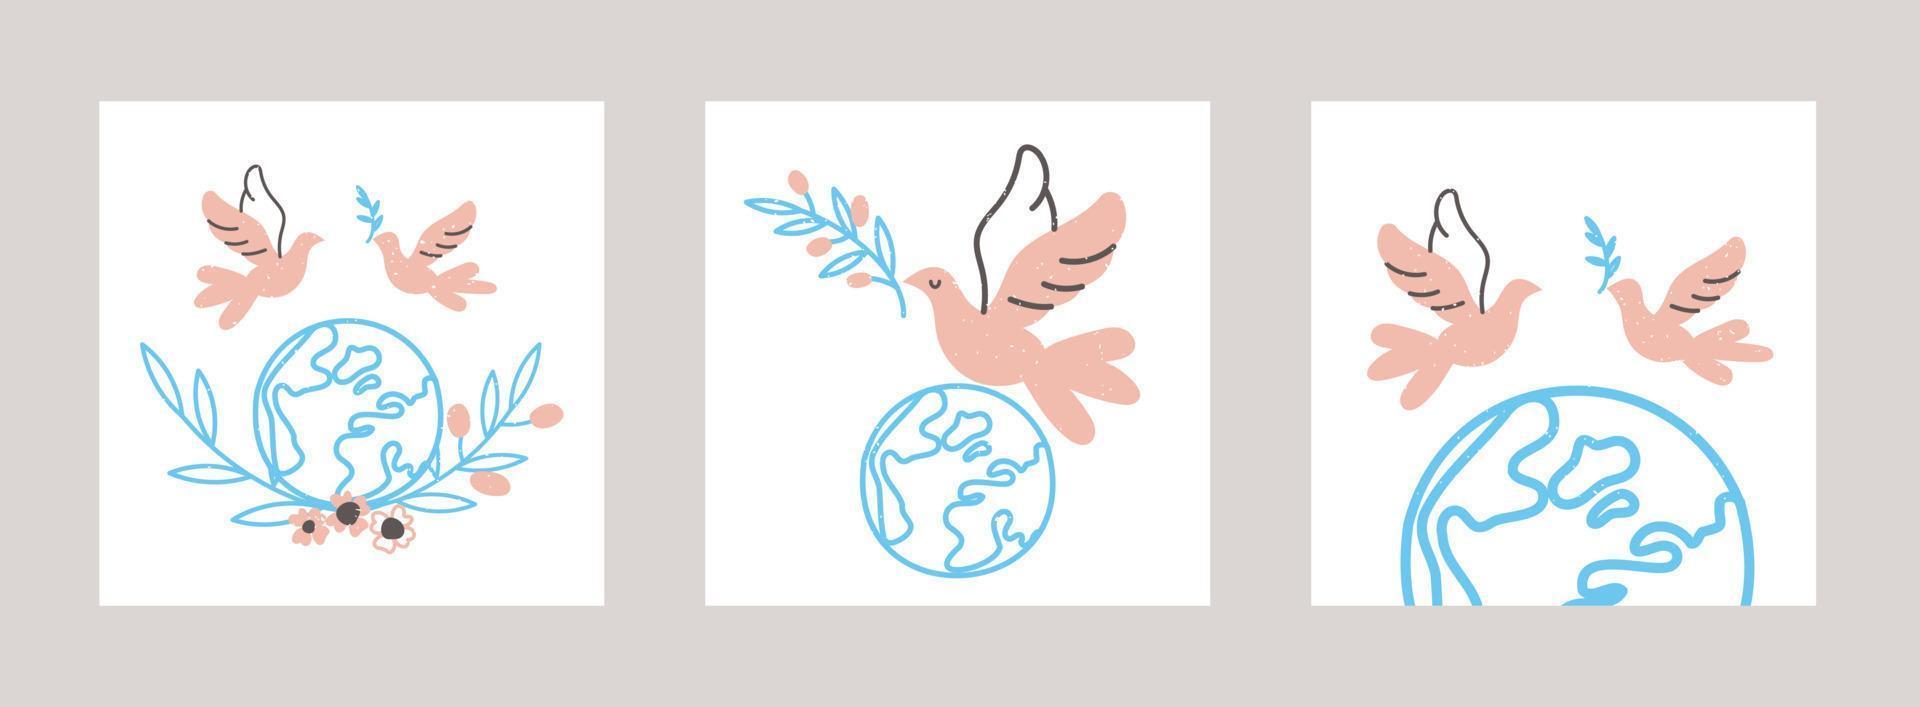 fliegende taube und planet erde kartensatz. minimalistische illustration für den internationalen tag des friedens. Vektor